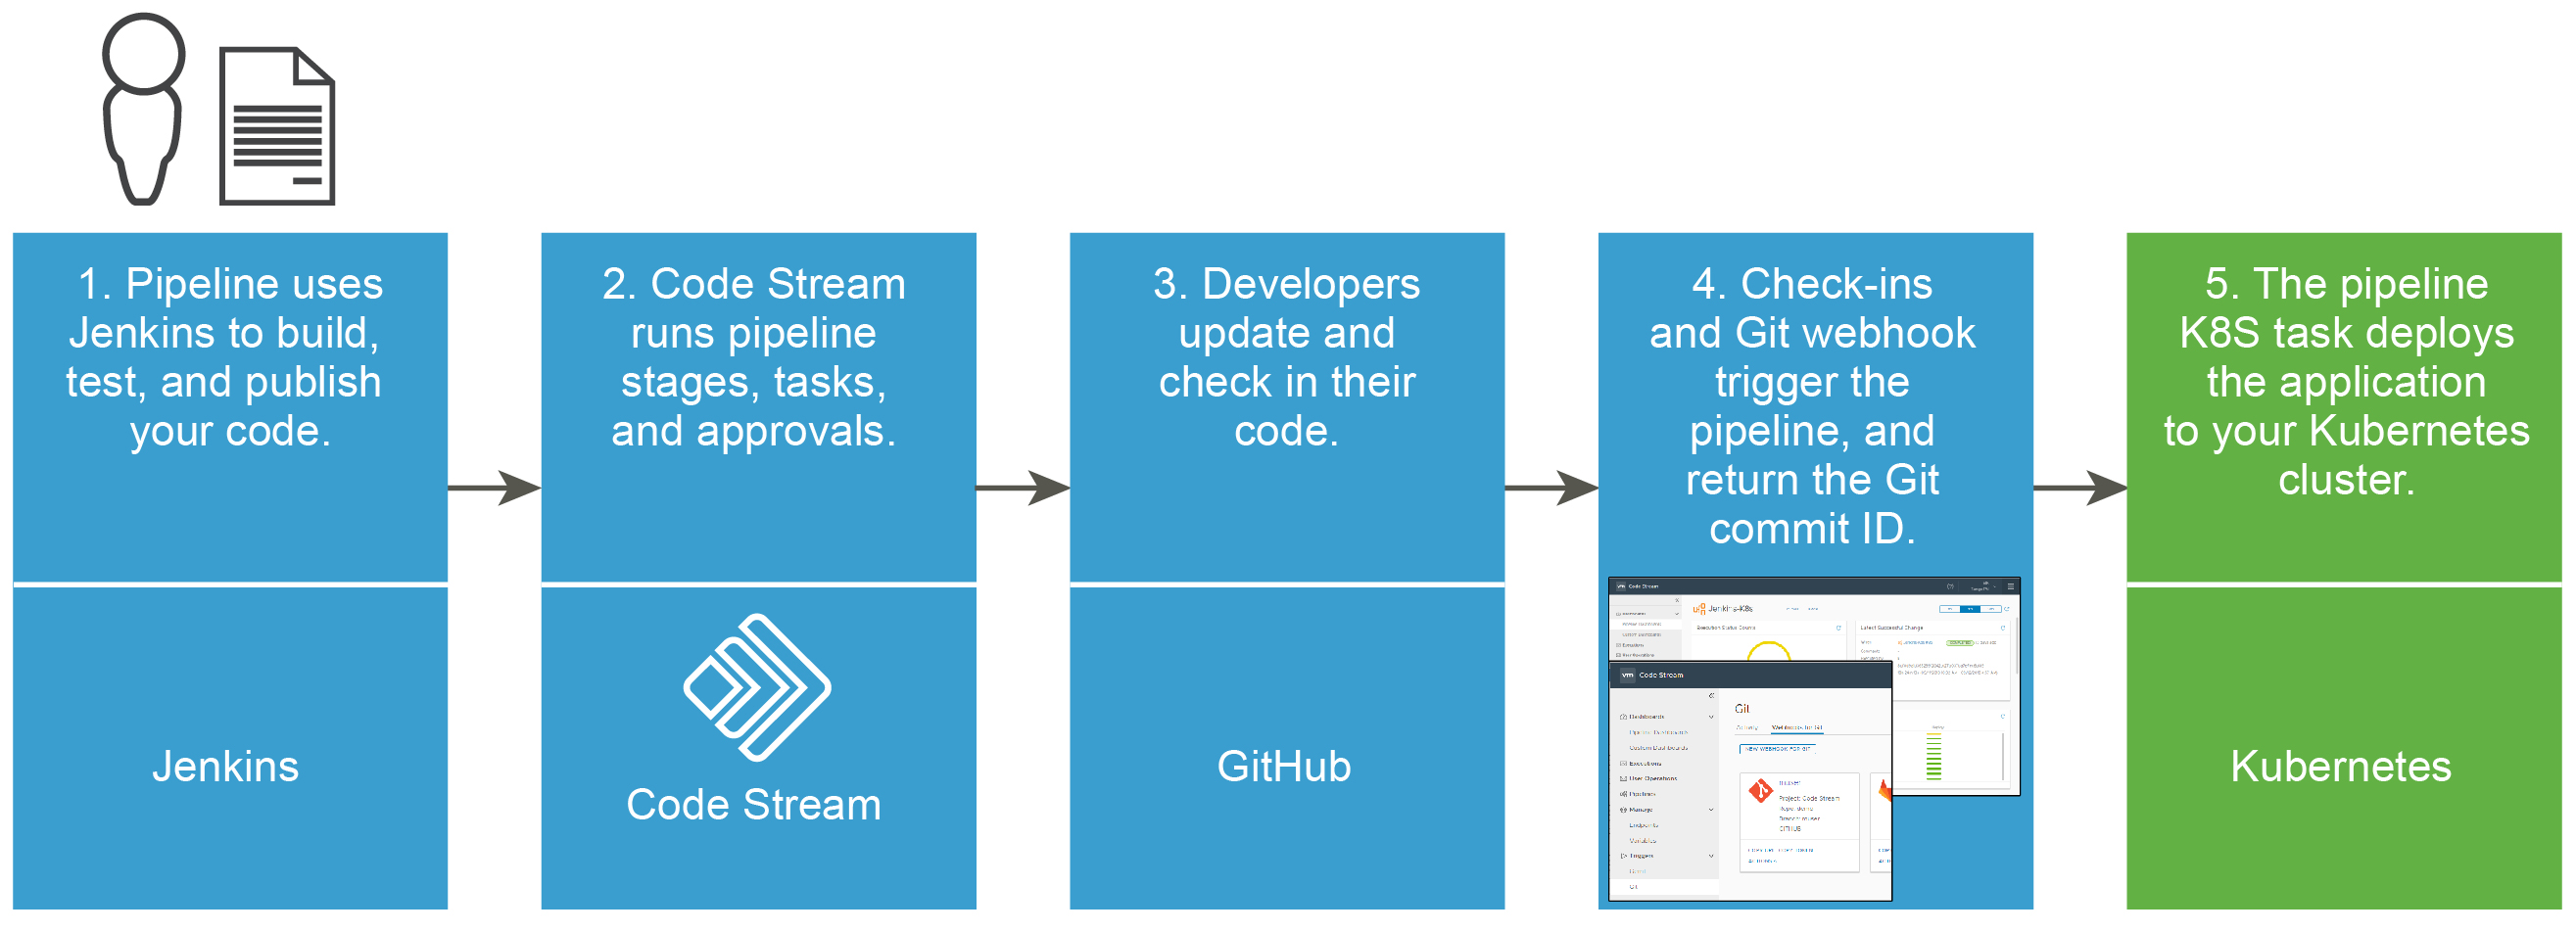 В рабочем процессе, который развертывает приложение в кластере Kubernetes, используются возможности Jenkins, Code Stream, GitHub, триггера Git и Kubernetes.